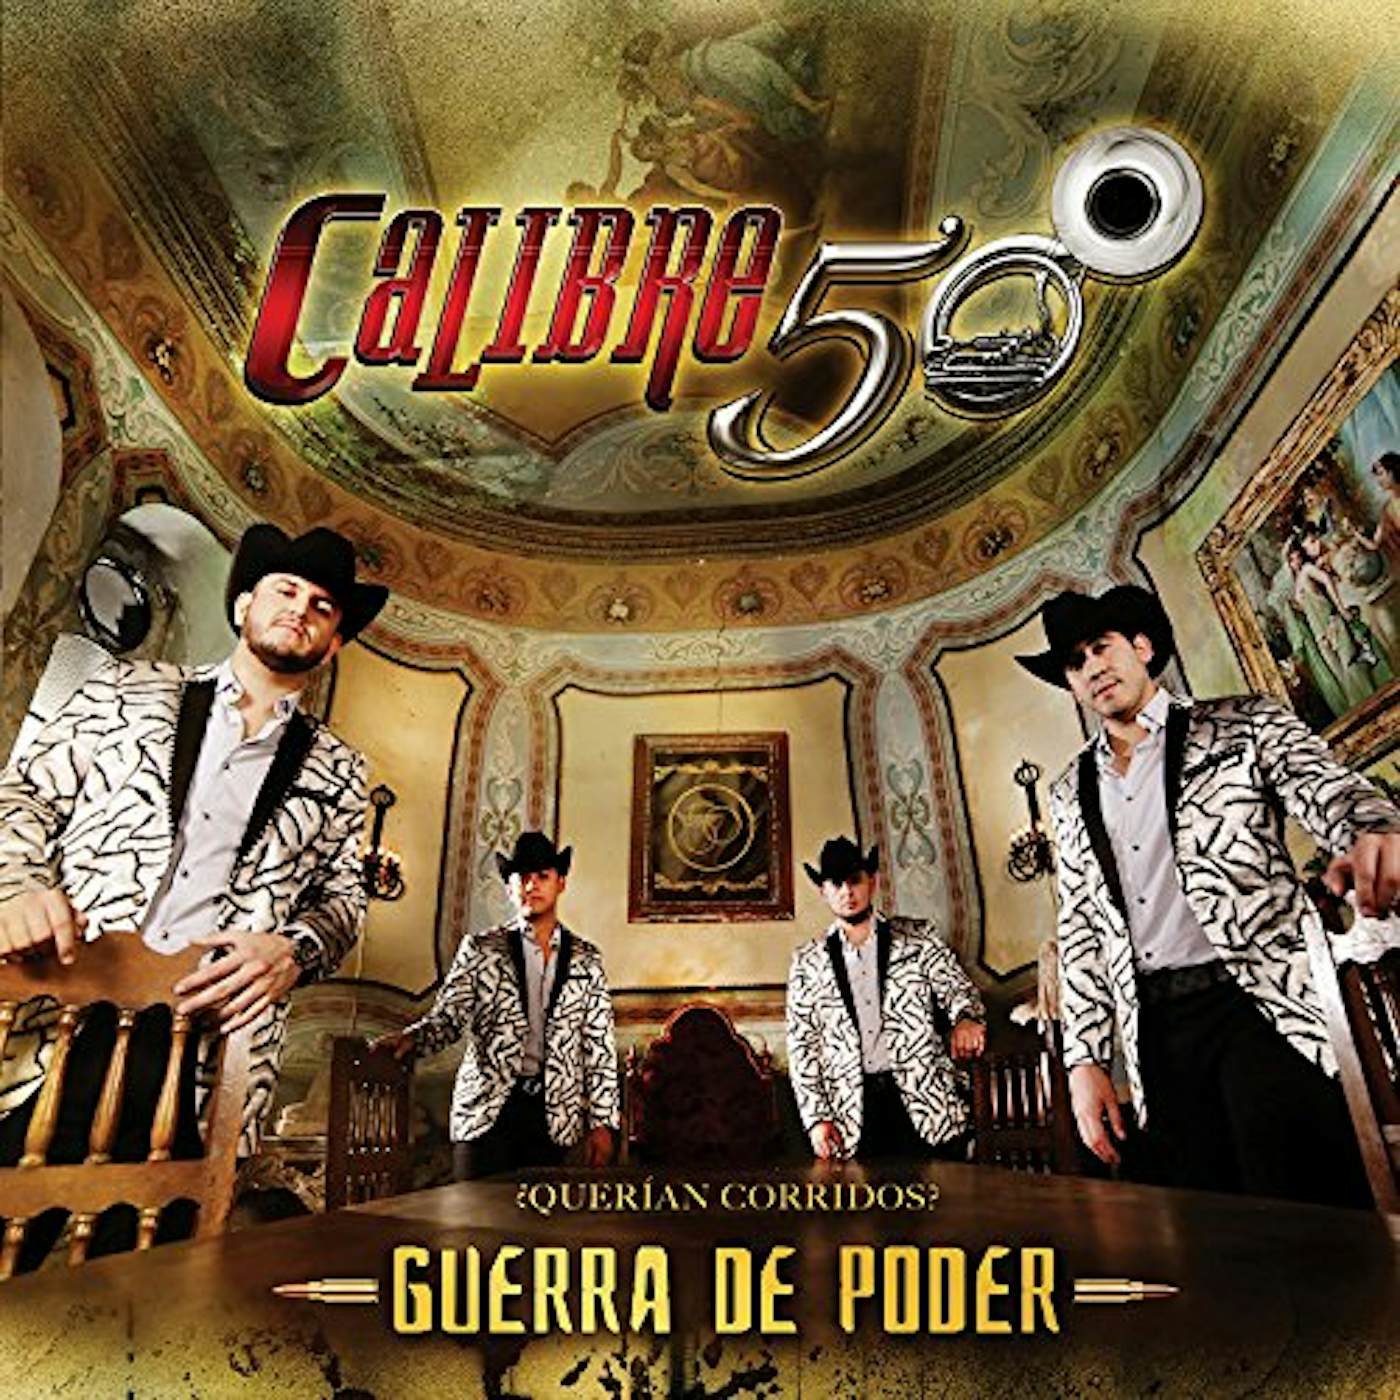 Calibre 50 GUERRA DE PODER CD